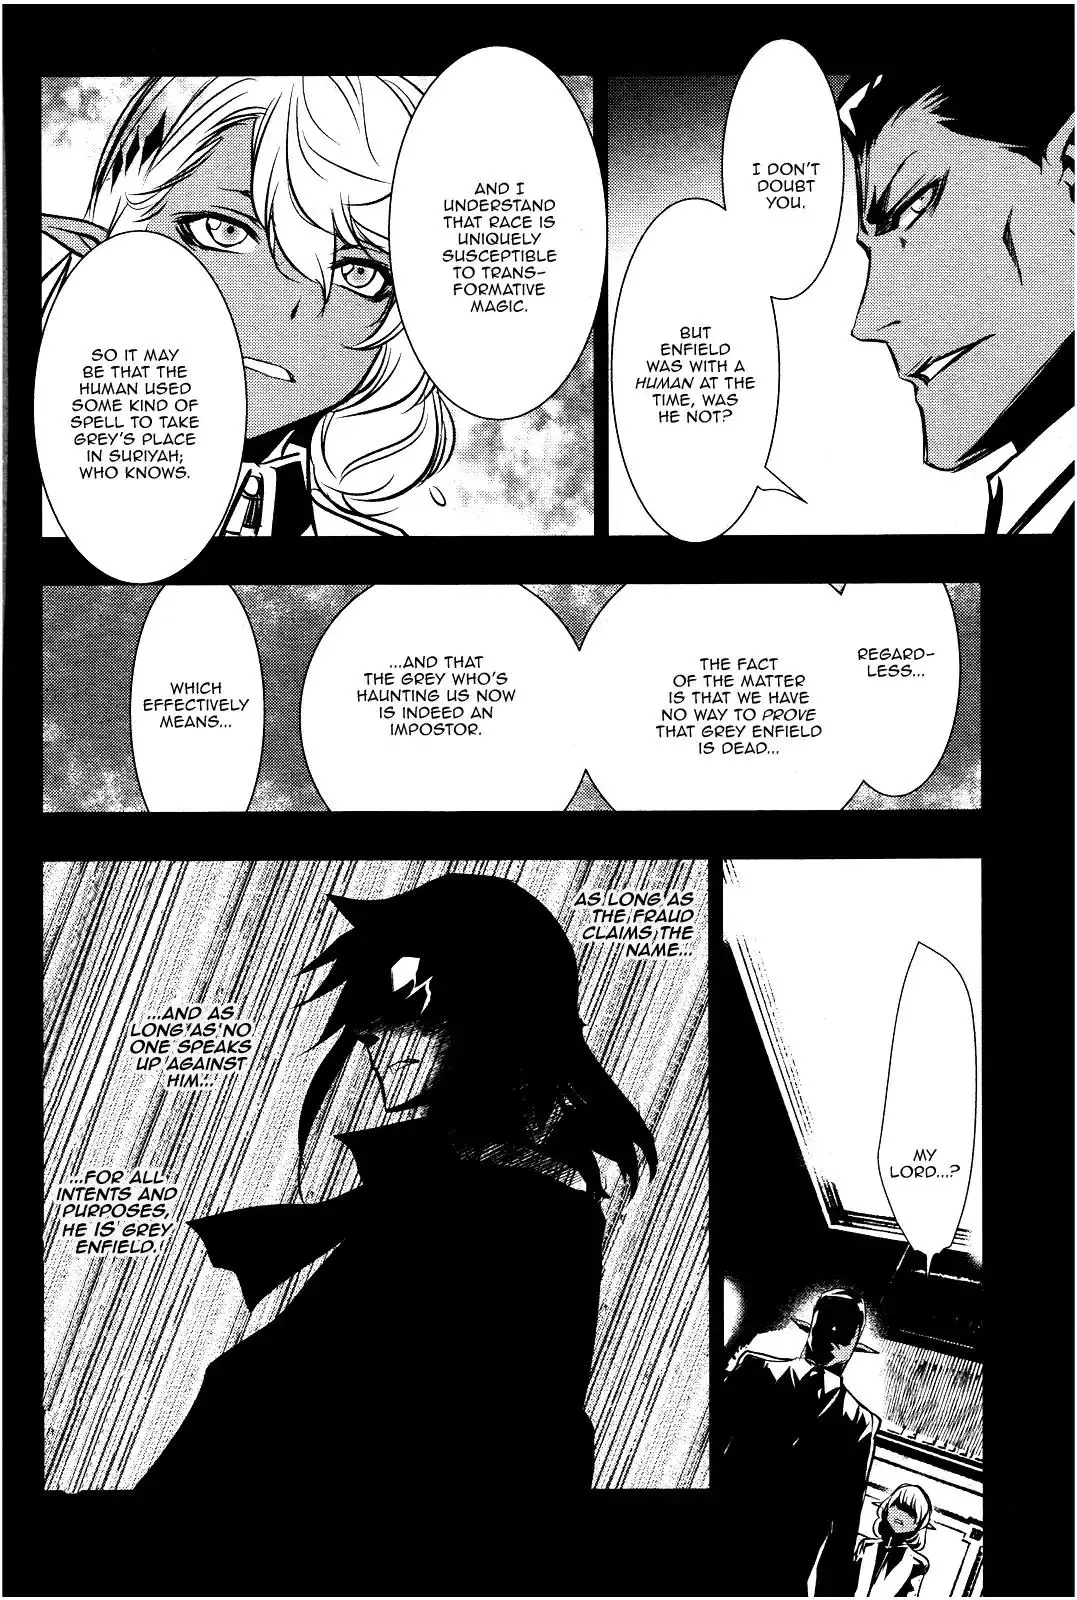 Shinju no Nectar - 17 page 2